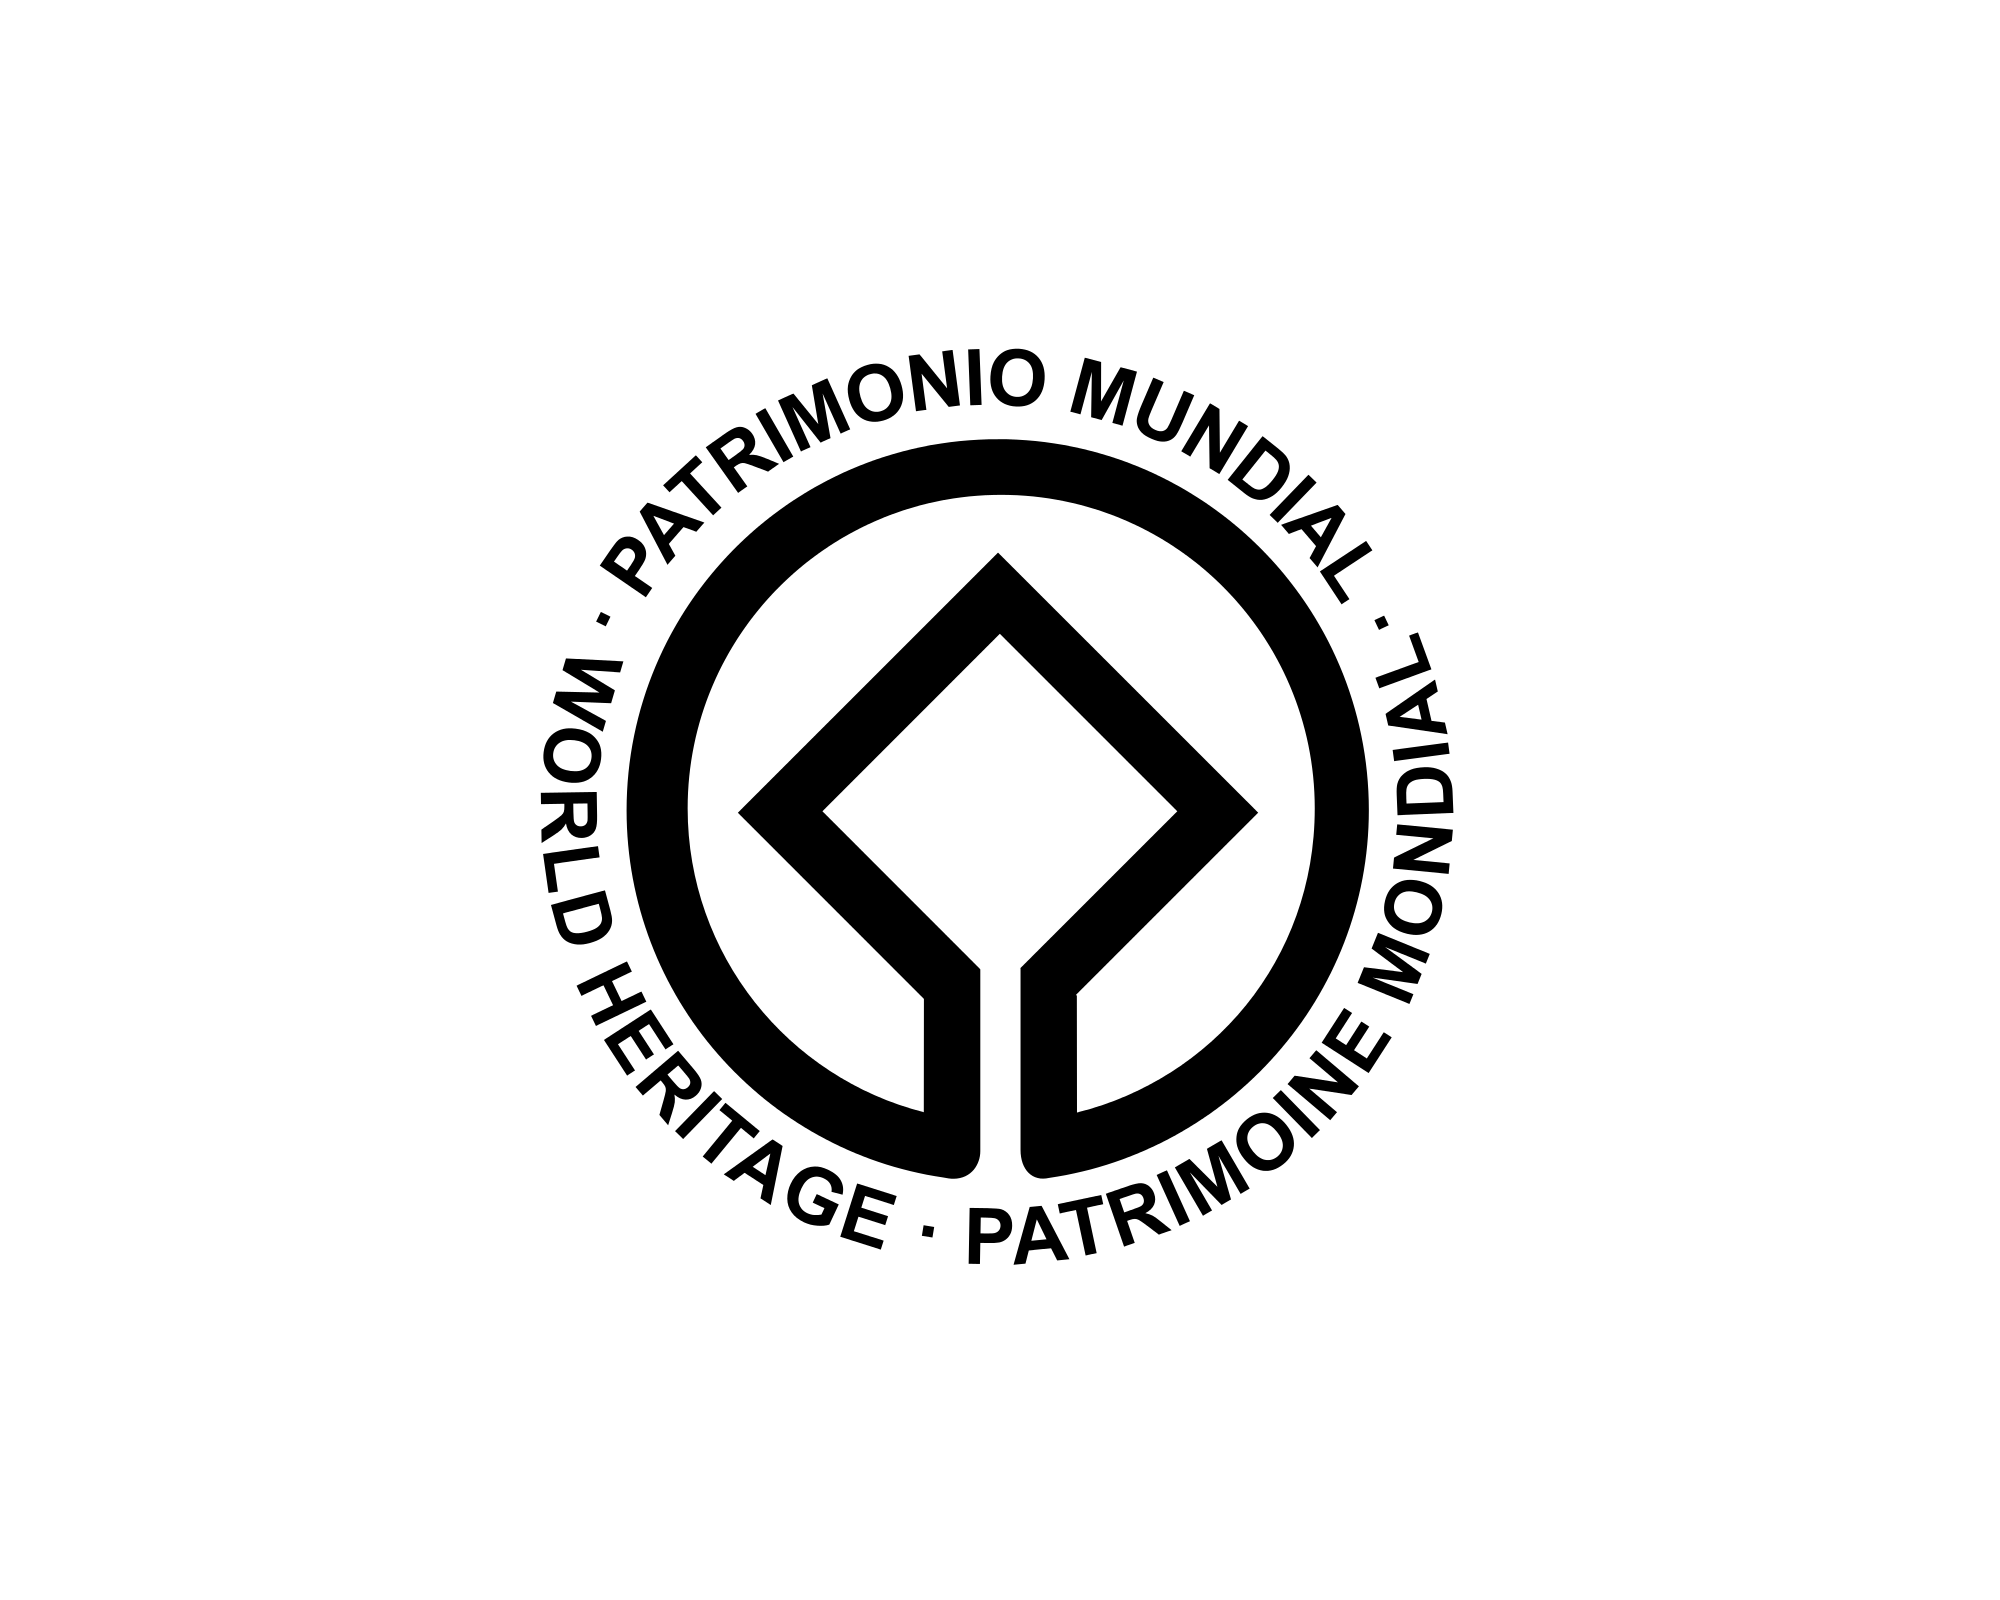 Эмблема ЮНЕСКО Всемирного наследия. Конвенция об охране мирового культурного и природного наследия. Символ ЮНЕСКО всемирное наследие. Всемирное культурное наследие 1972 ЮНЕСКО.